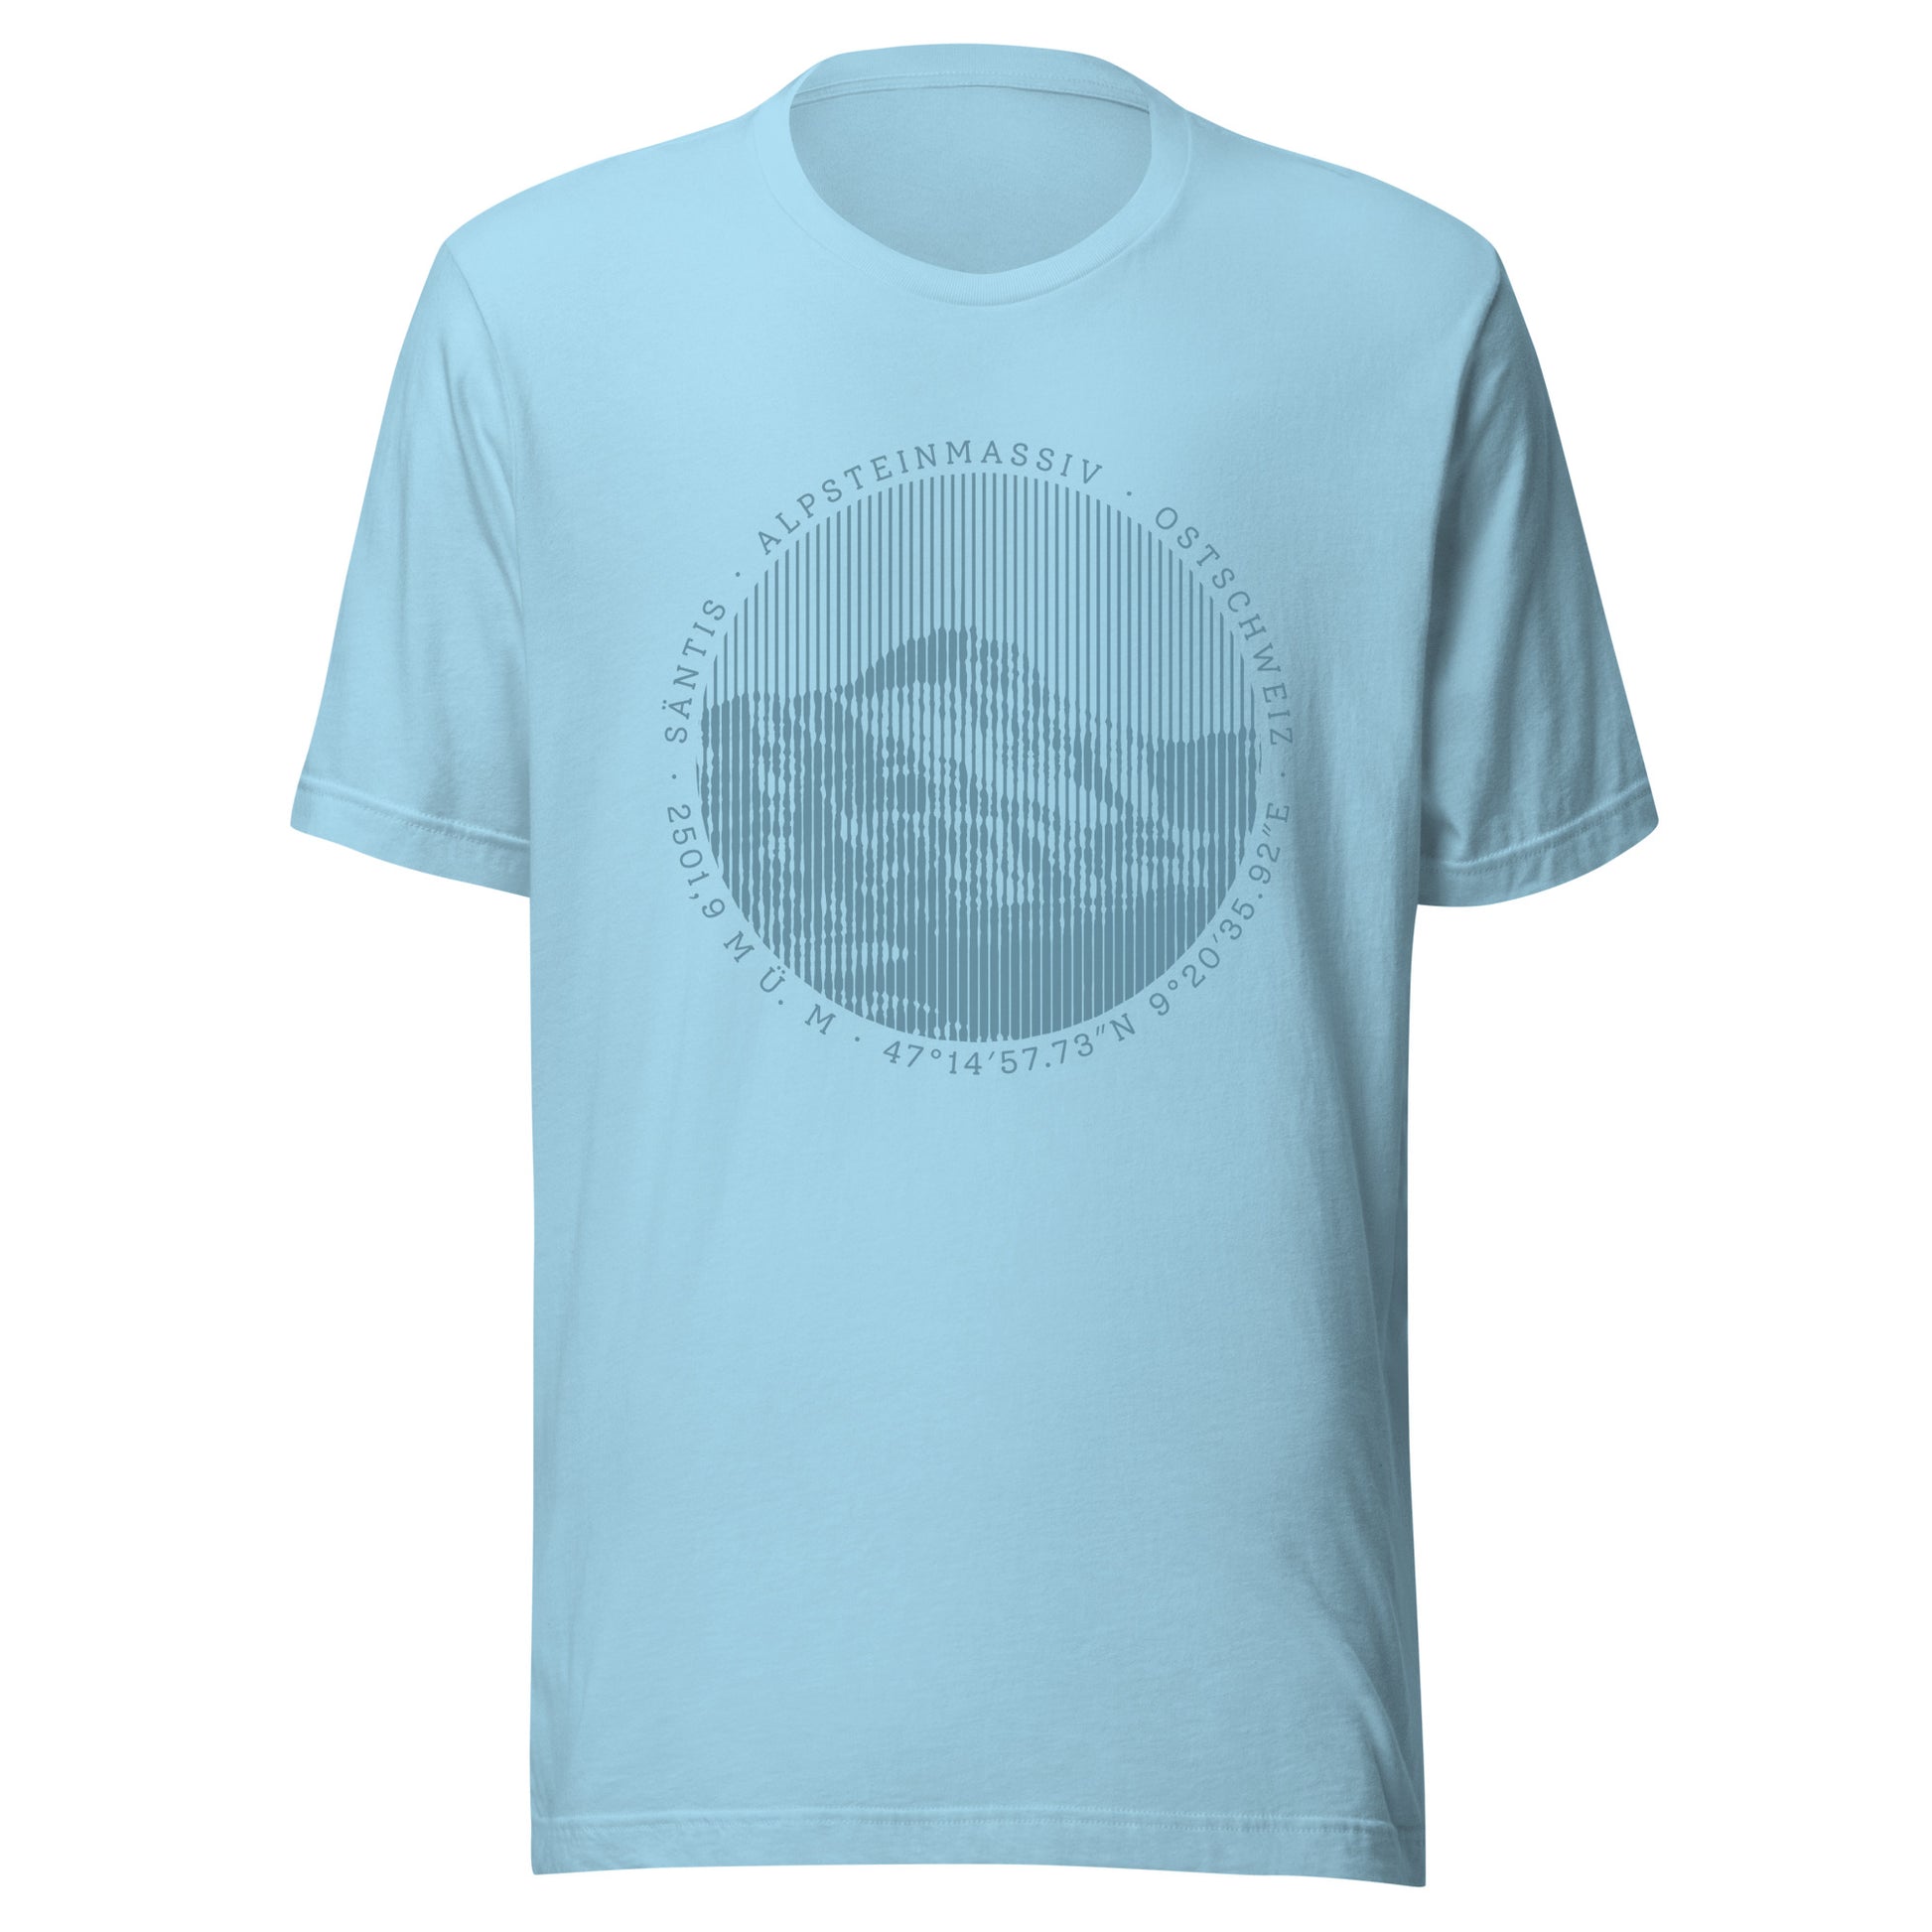 hellblaues Damen T-Shirt. Der Print zeigt den Säntis, einen legendären Berggipfel in den Appenzeller Alpen in der Ostschweiz.